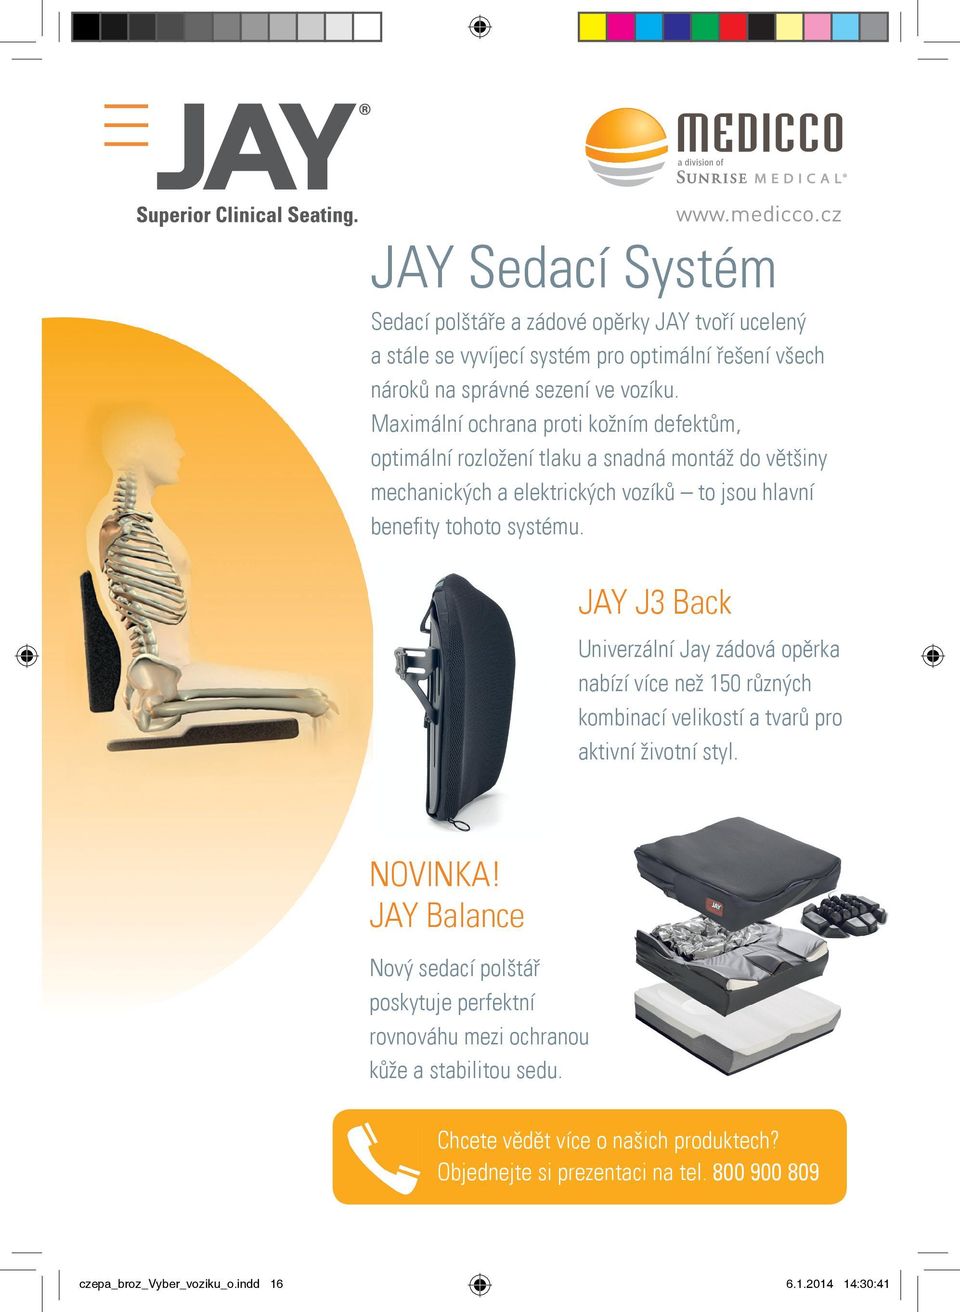 JAY J3 Back Univerzální Jay zádová opěrka nabízí více než 150 různých kombinací velikostí a tvarů pro aktivní životní styl. NOVINKA!